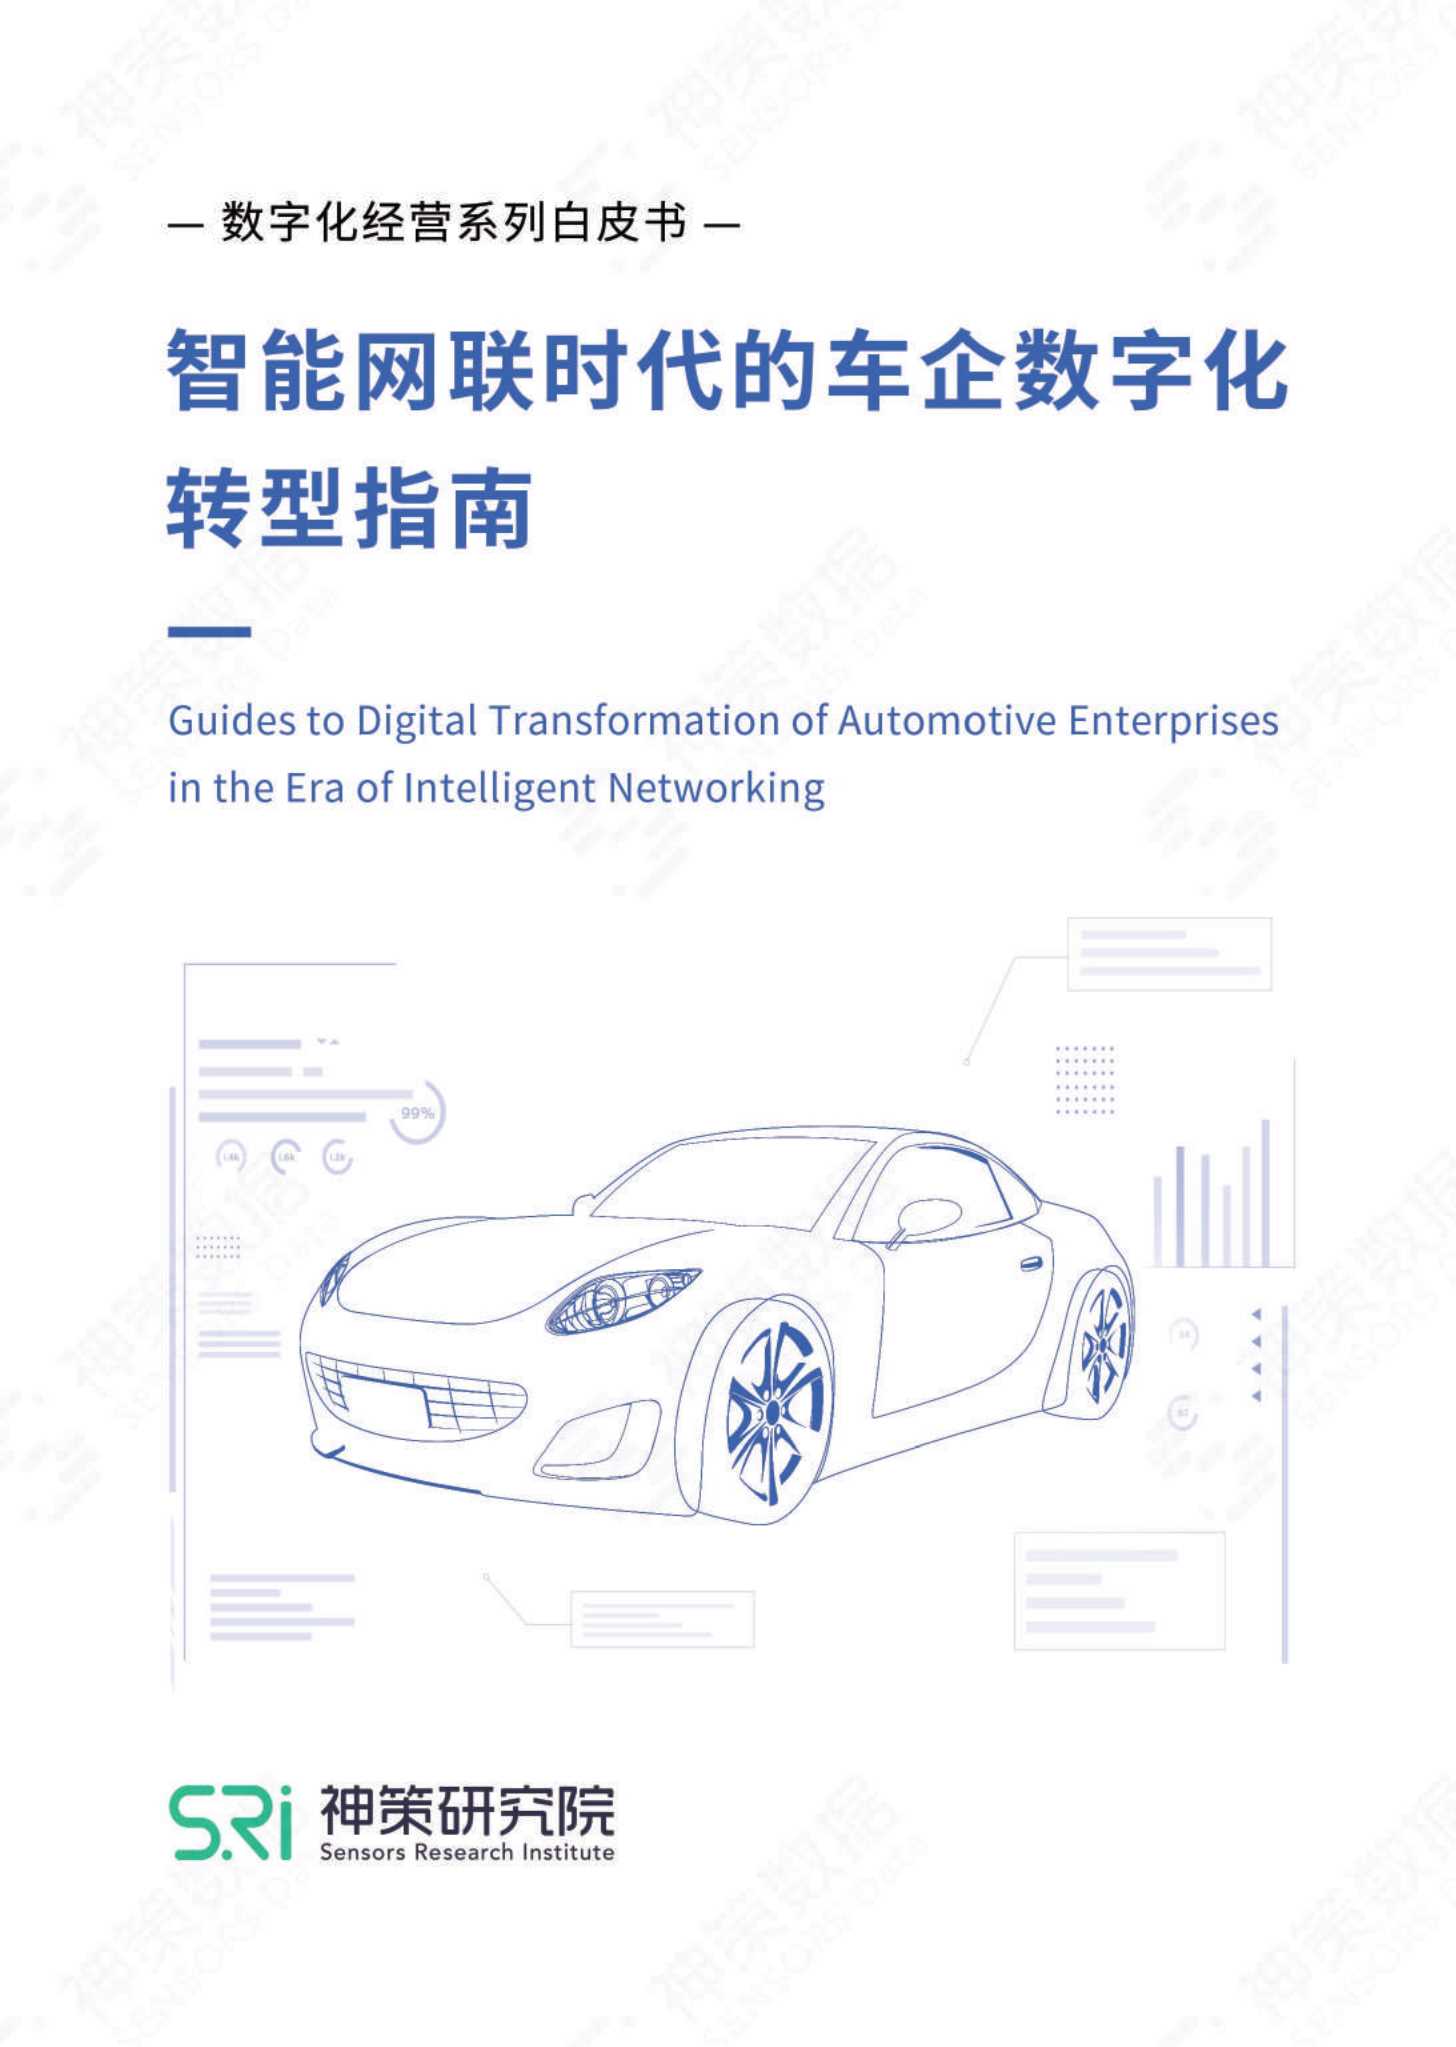 神策数据-智能网联时代的车企数字化转型指南-2021.09-33页